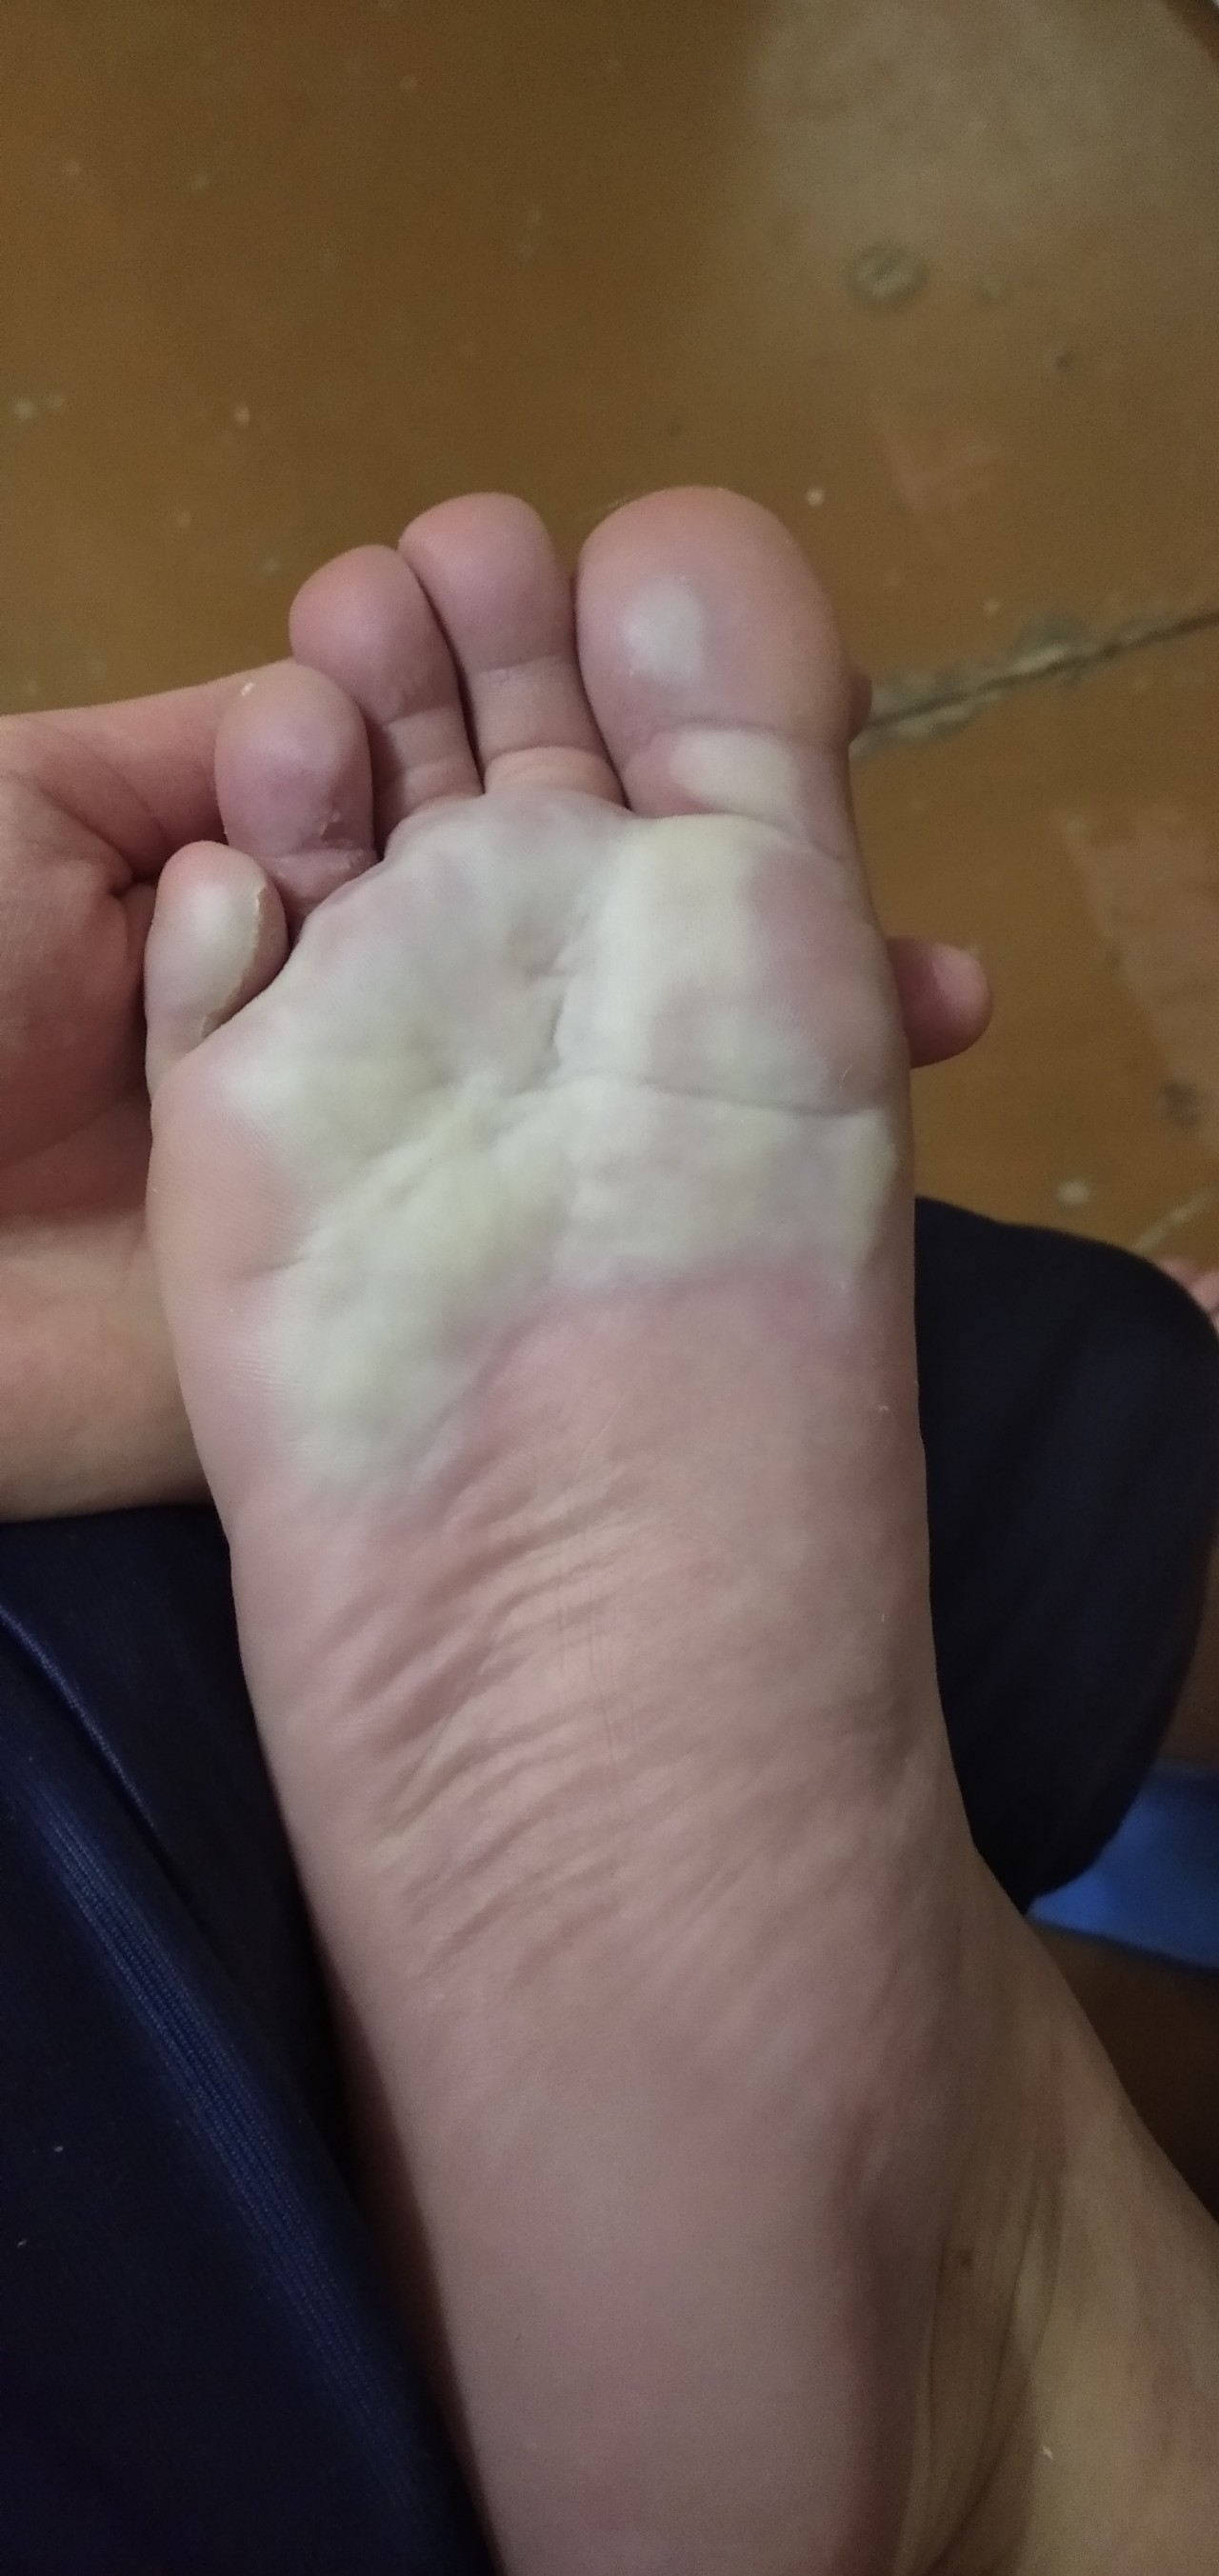 Микоз стоп (грибок на ногах) - как выглядит, причины, симптомы и лечение